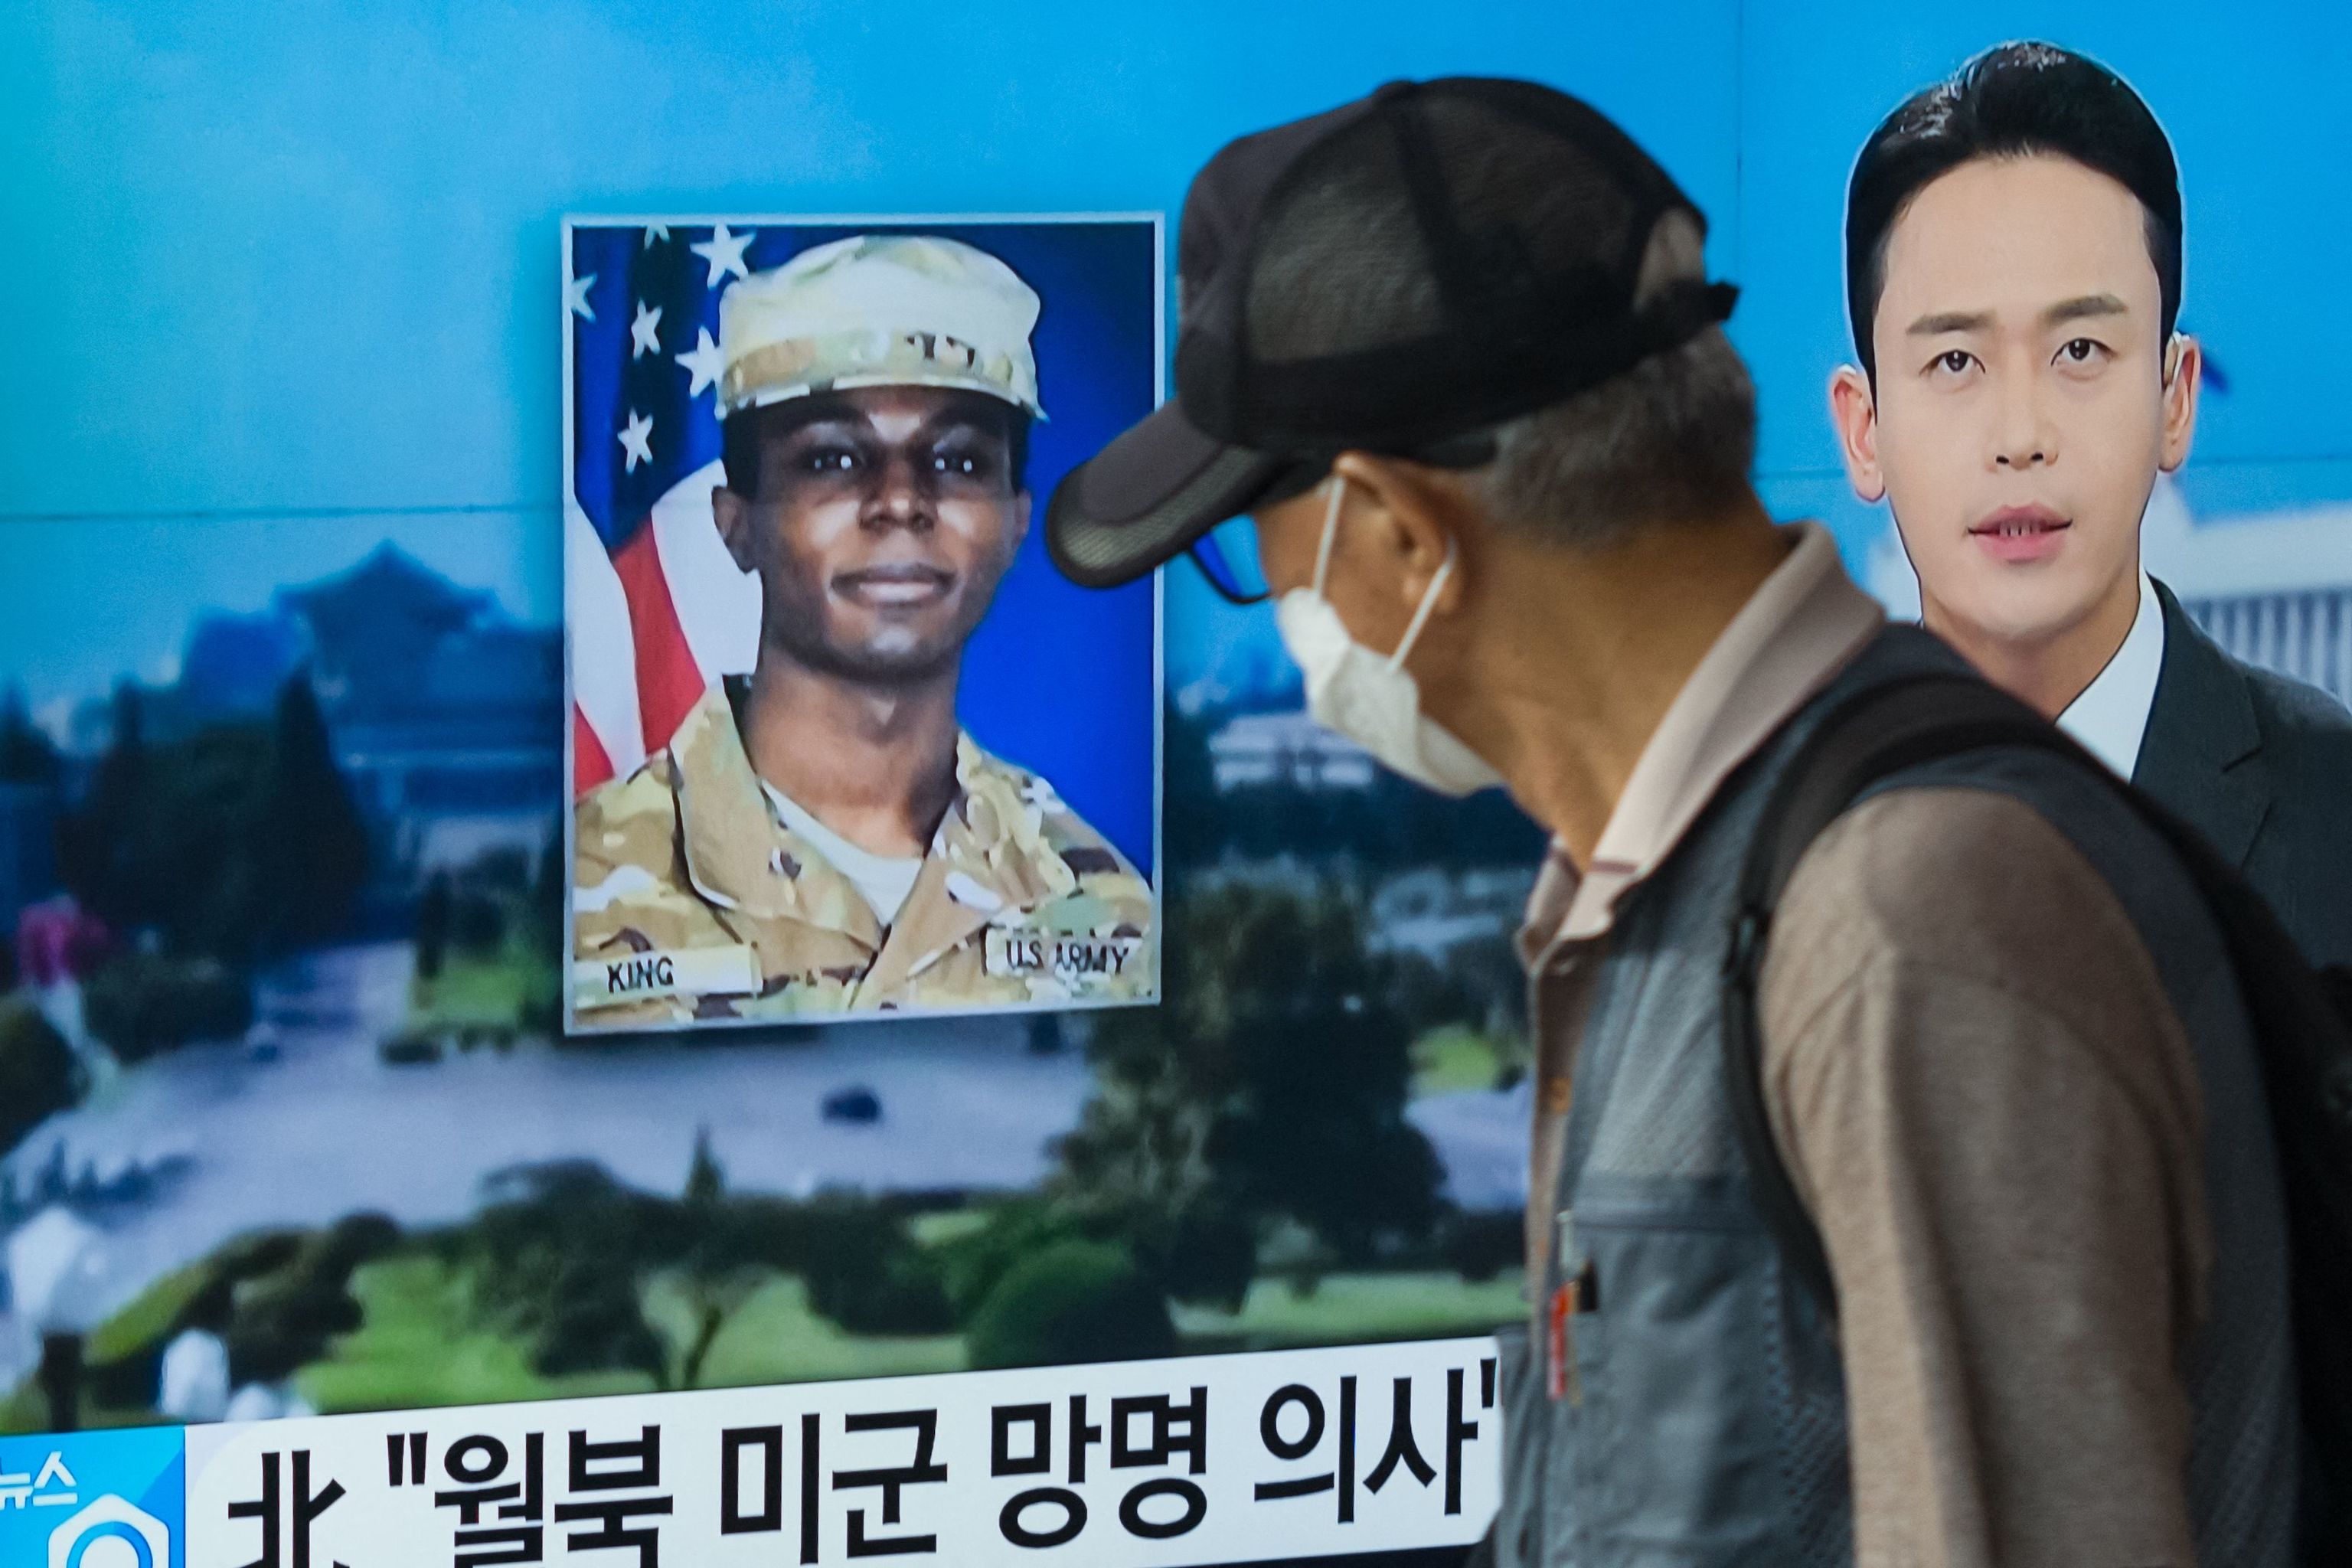 Corea del Norte va a expulsar al soldado americano que entró ilegalmente en su territorio